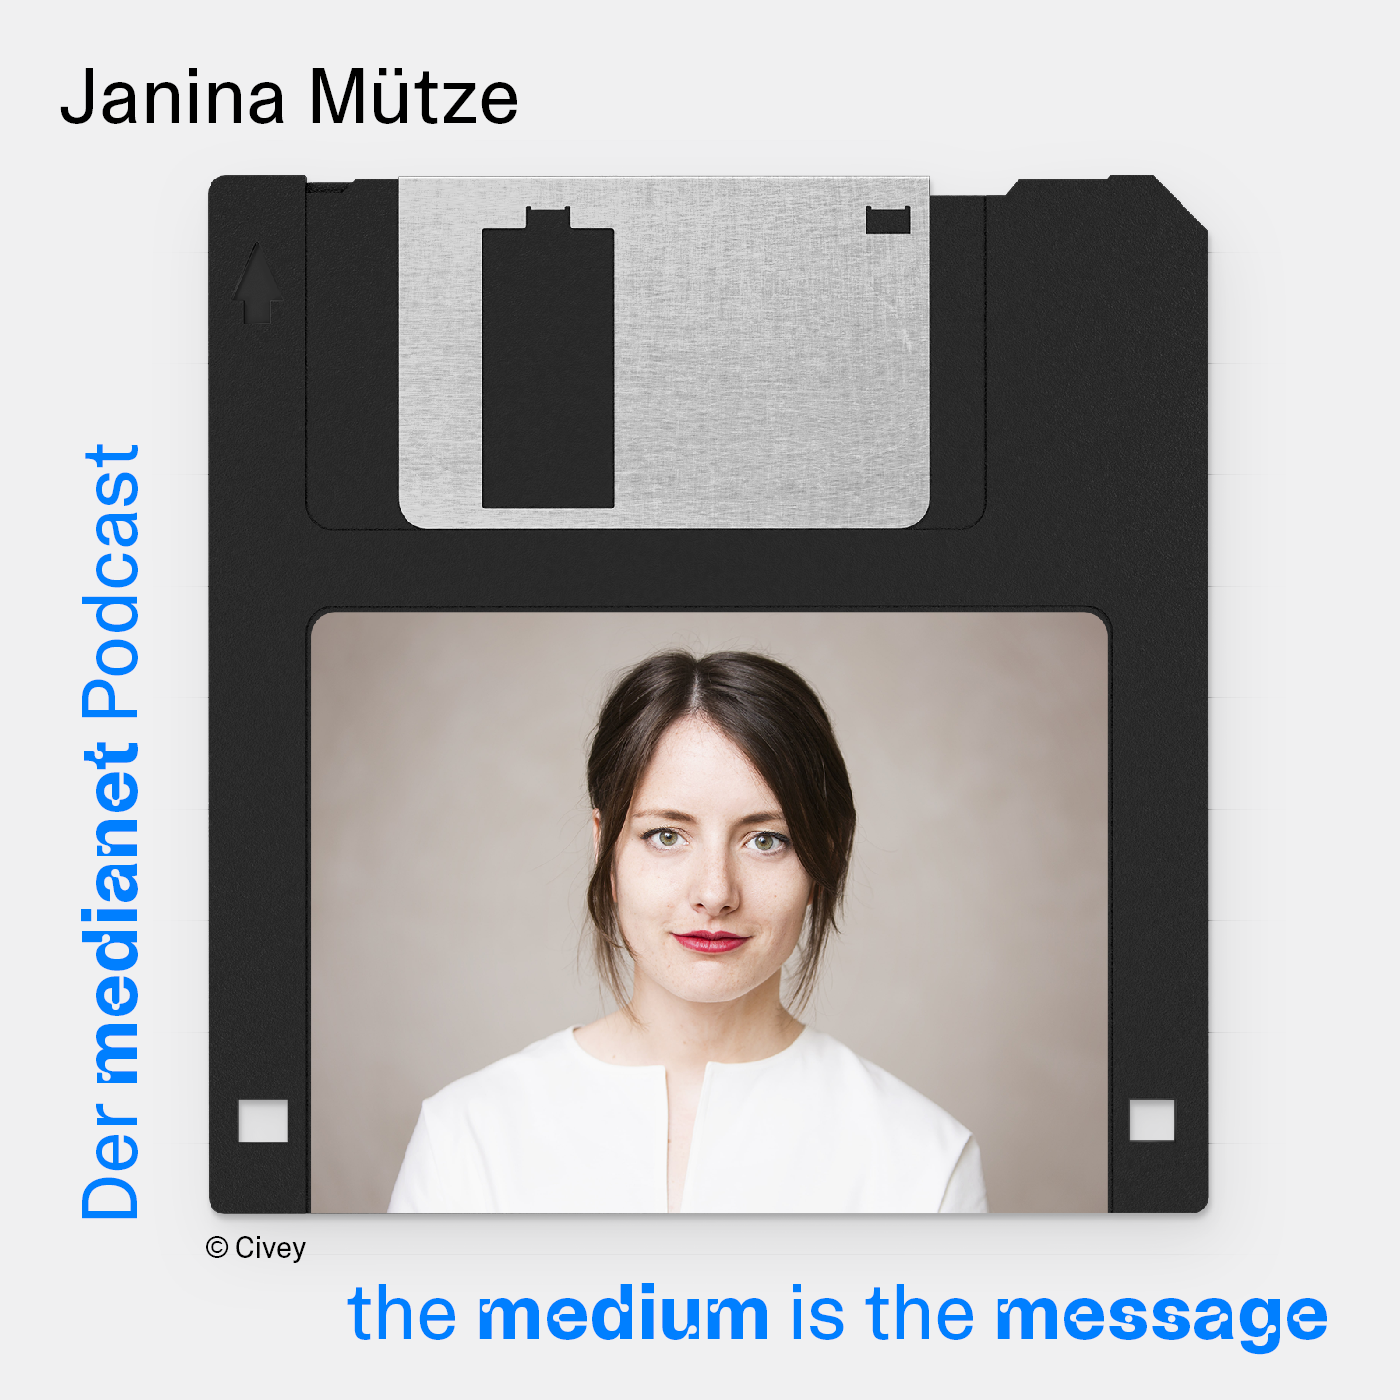 Janina Mütze – was erwartet die Generation Z von der heutigen Arbeitswelt?